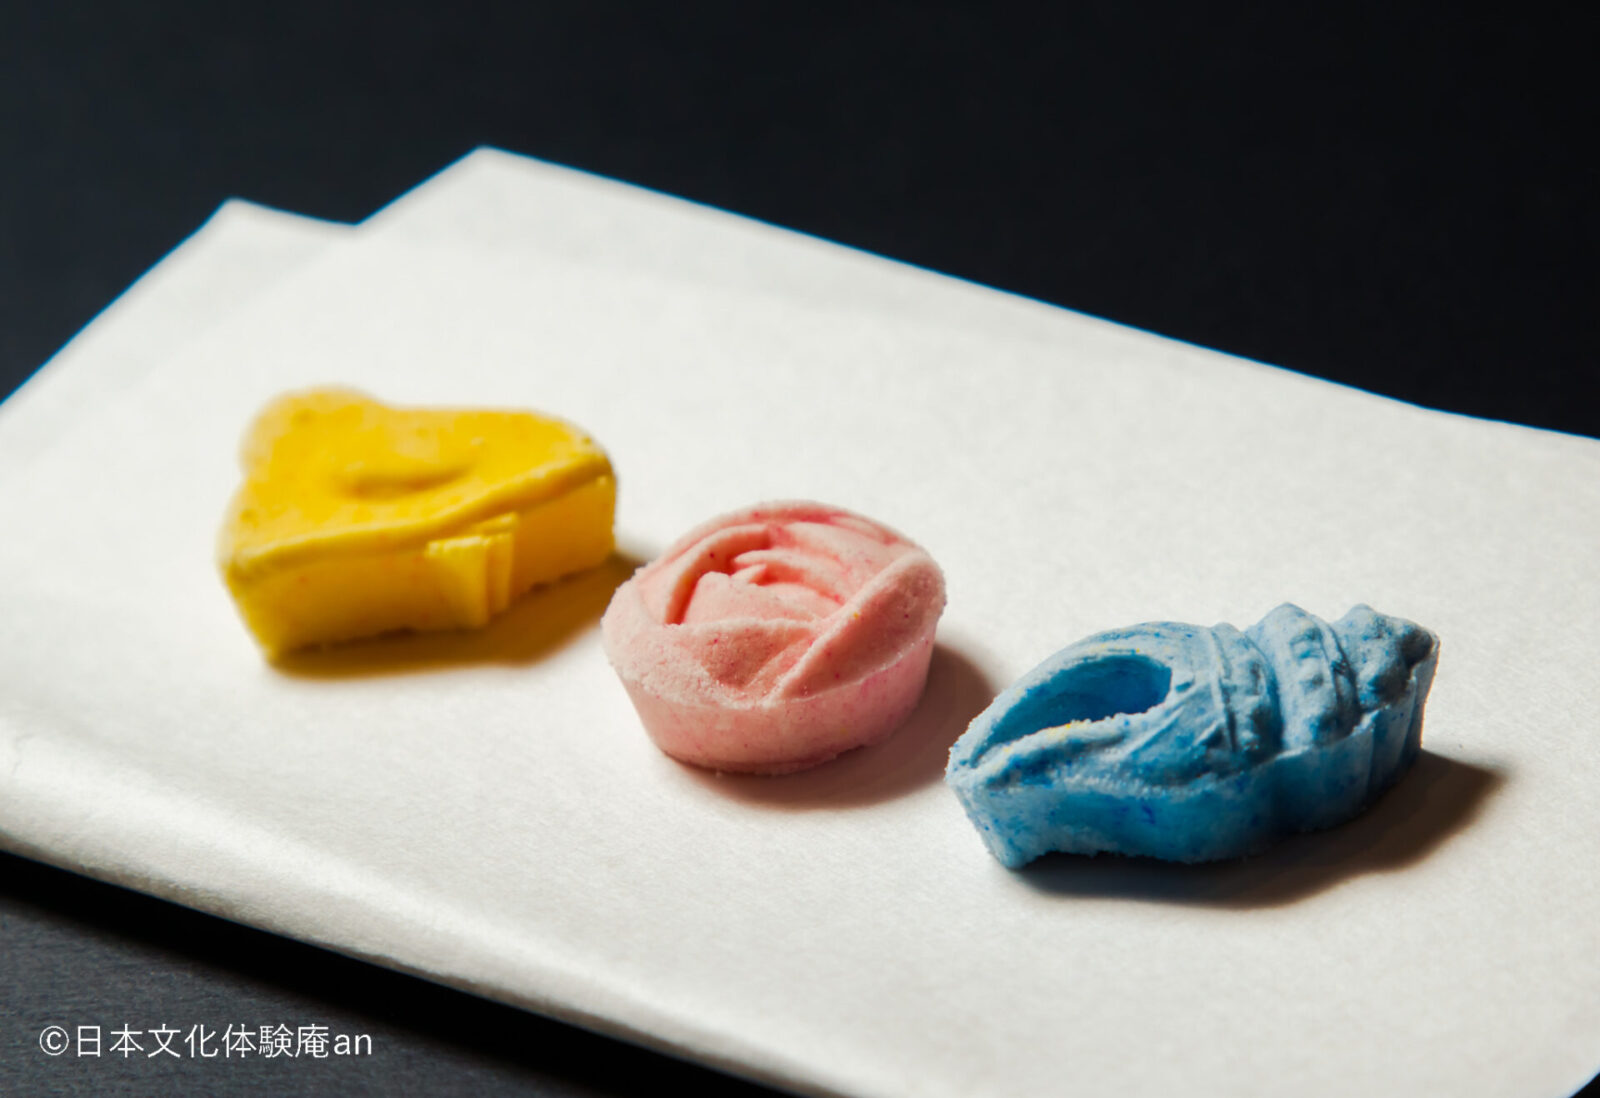 Japanese dried-type Sweets (Ohigashi) making with Tatedashi Matcha